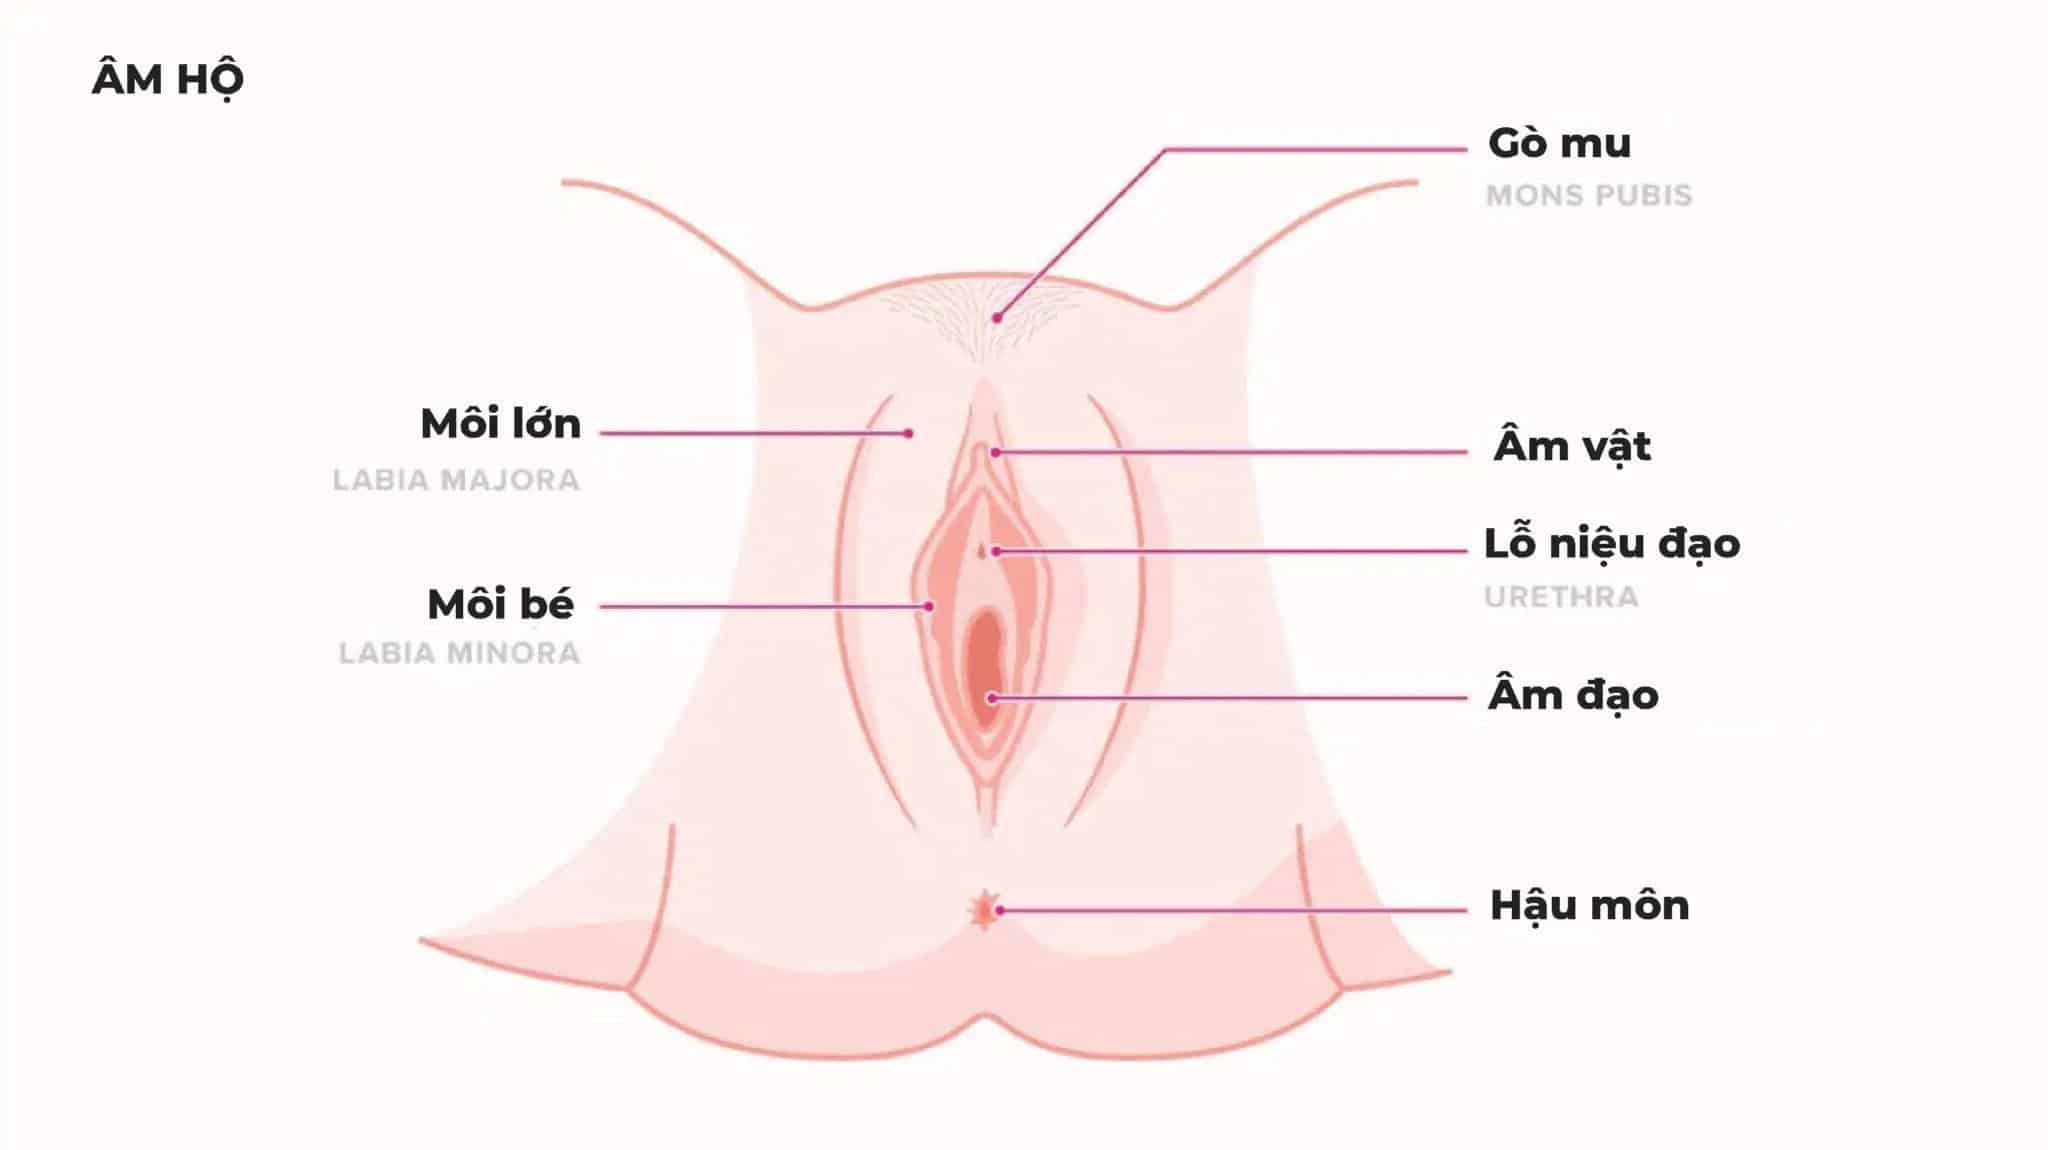 Cấu tạo bộ phận sinh dục nữ 3D  Hình ảnh giải phẫu chi tiết